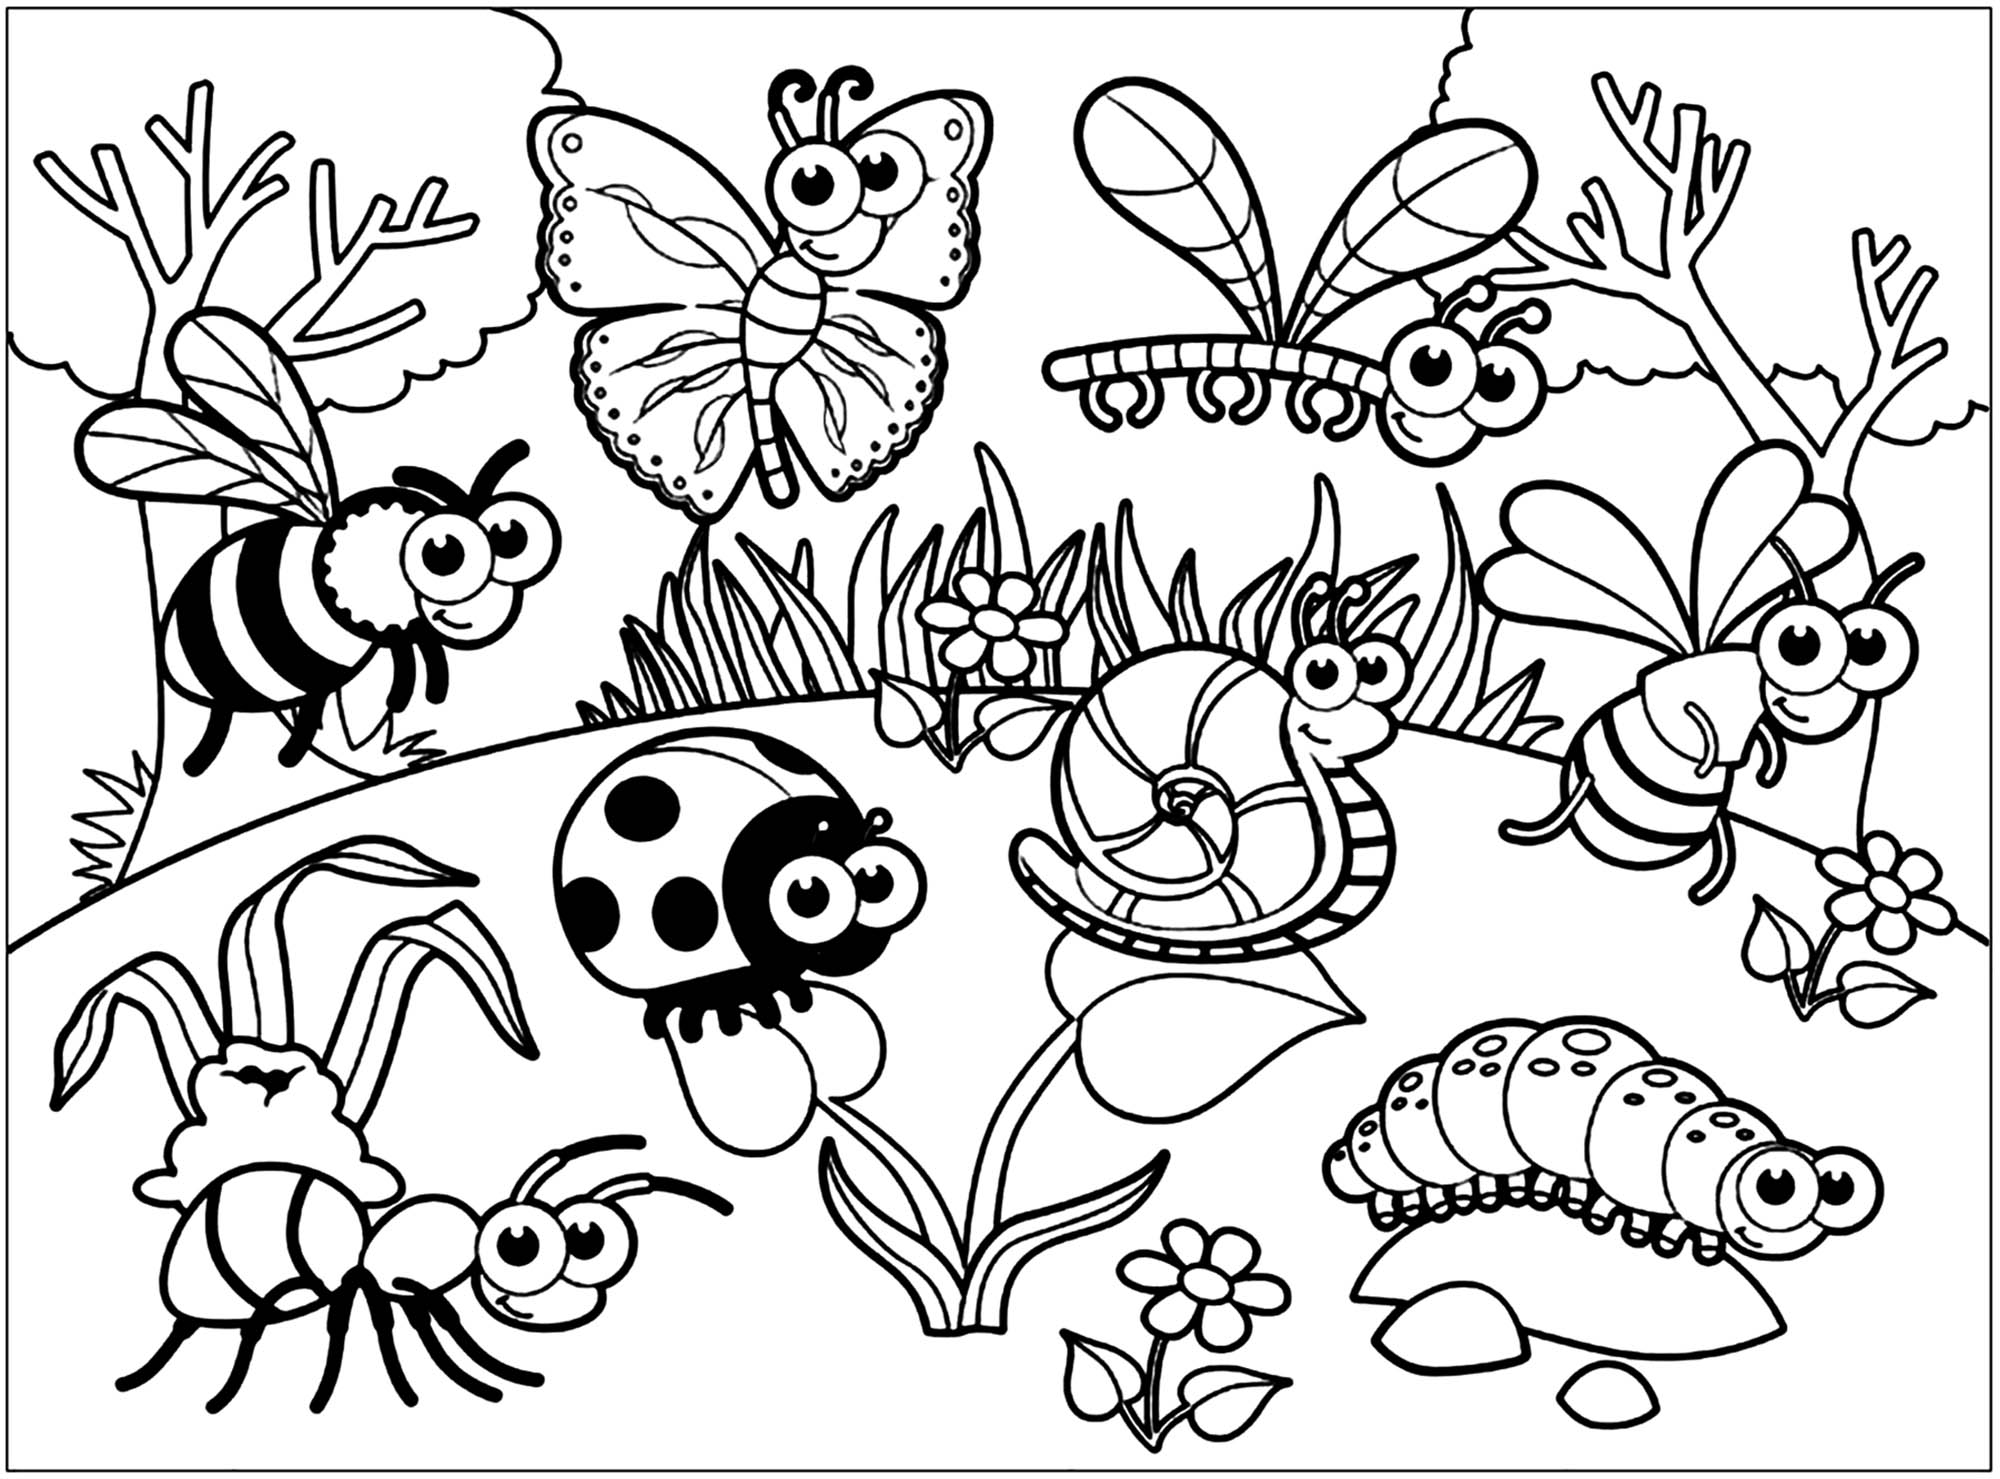 Diversos insectos desenhados em estilo cartoon e infantil